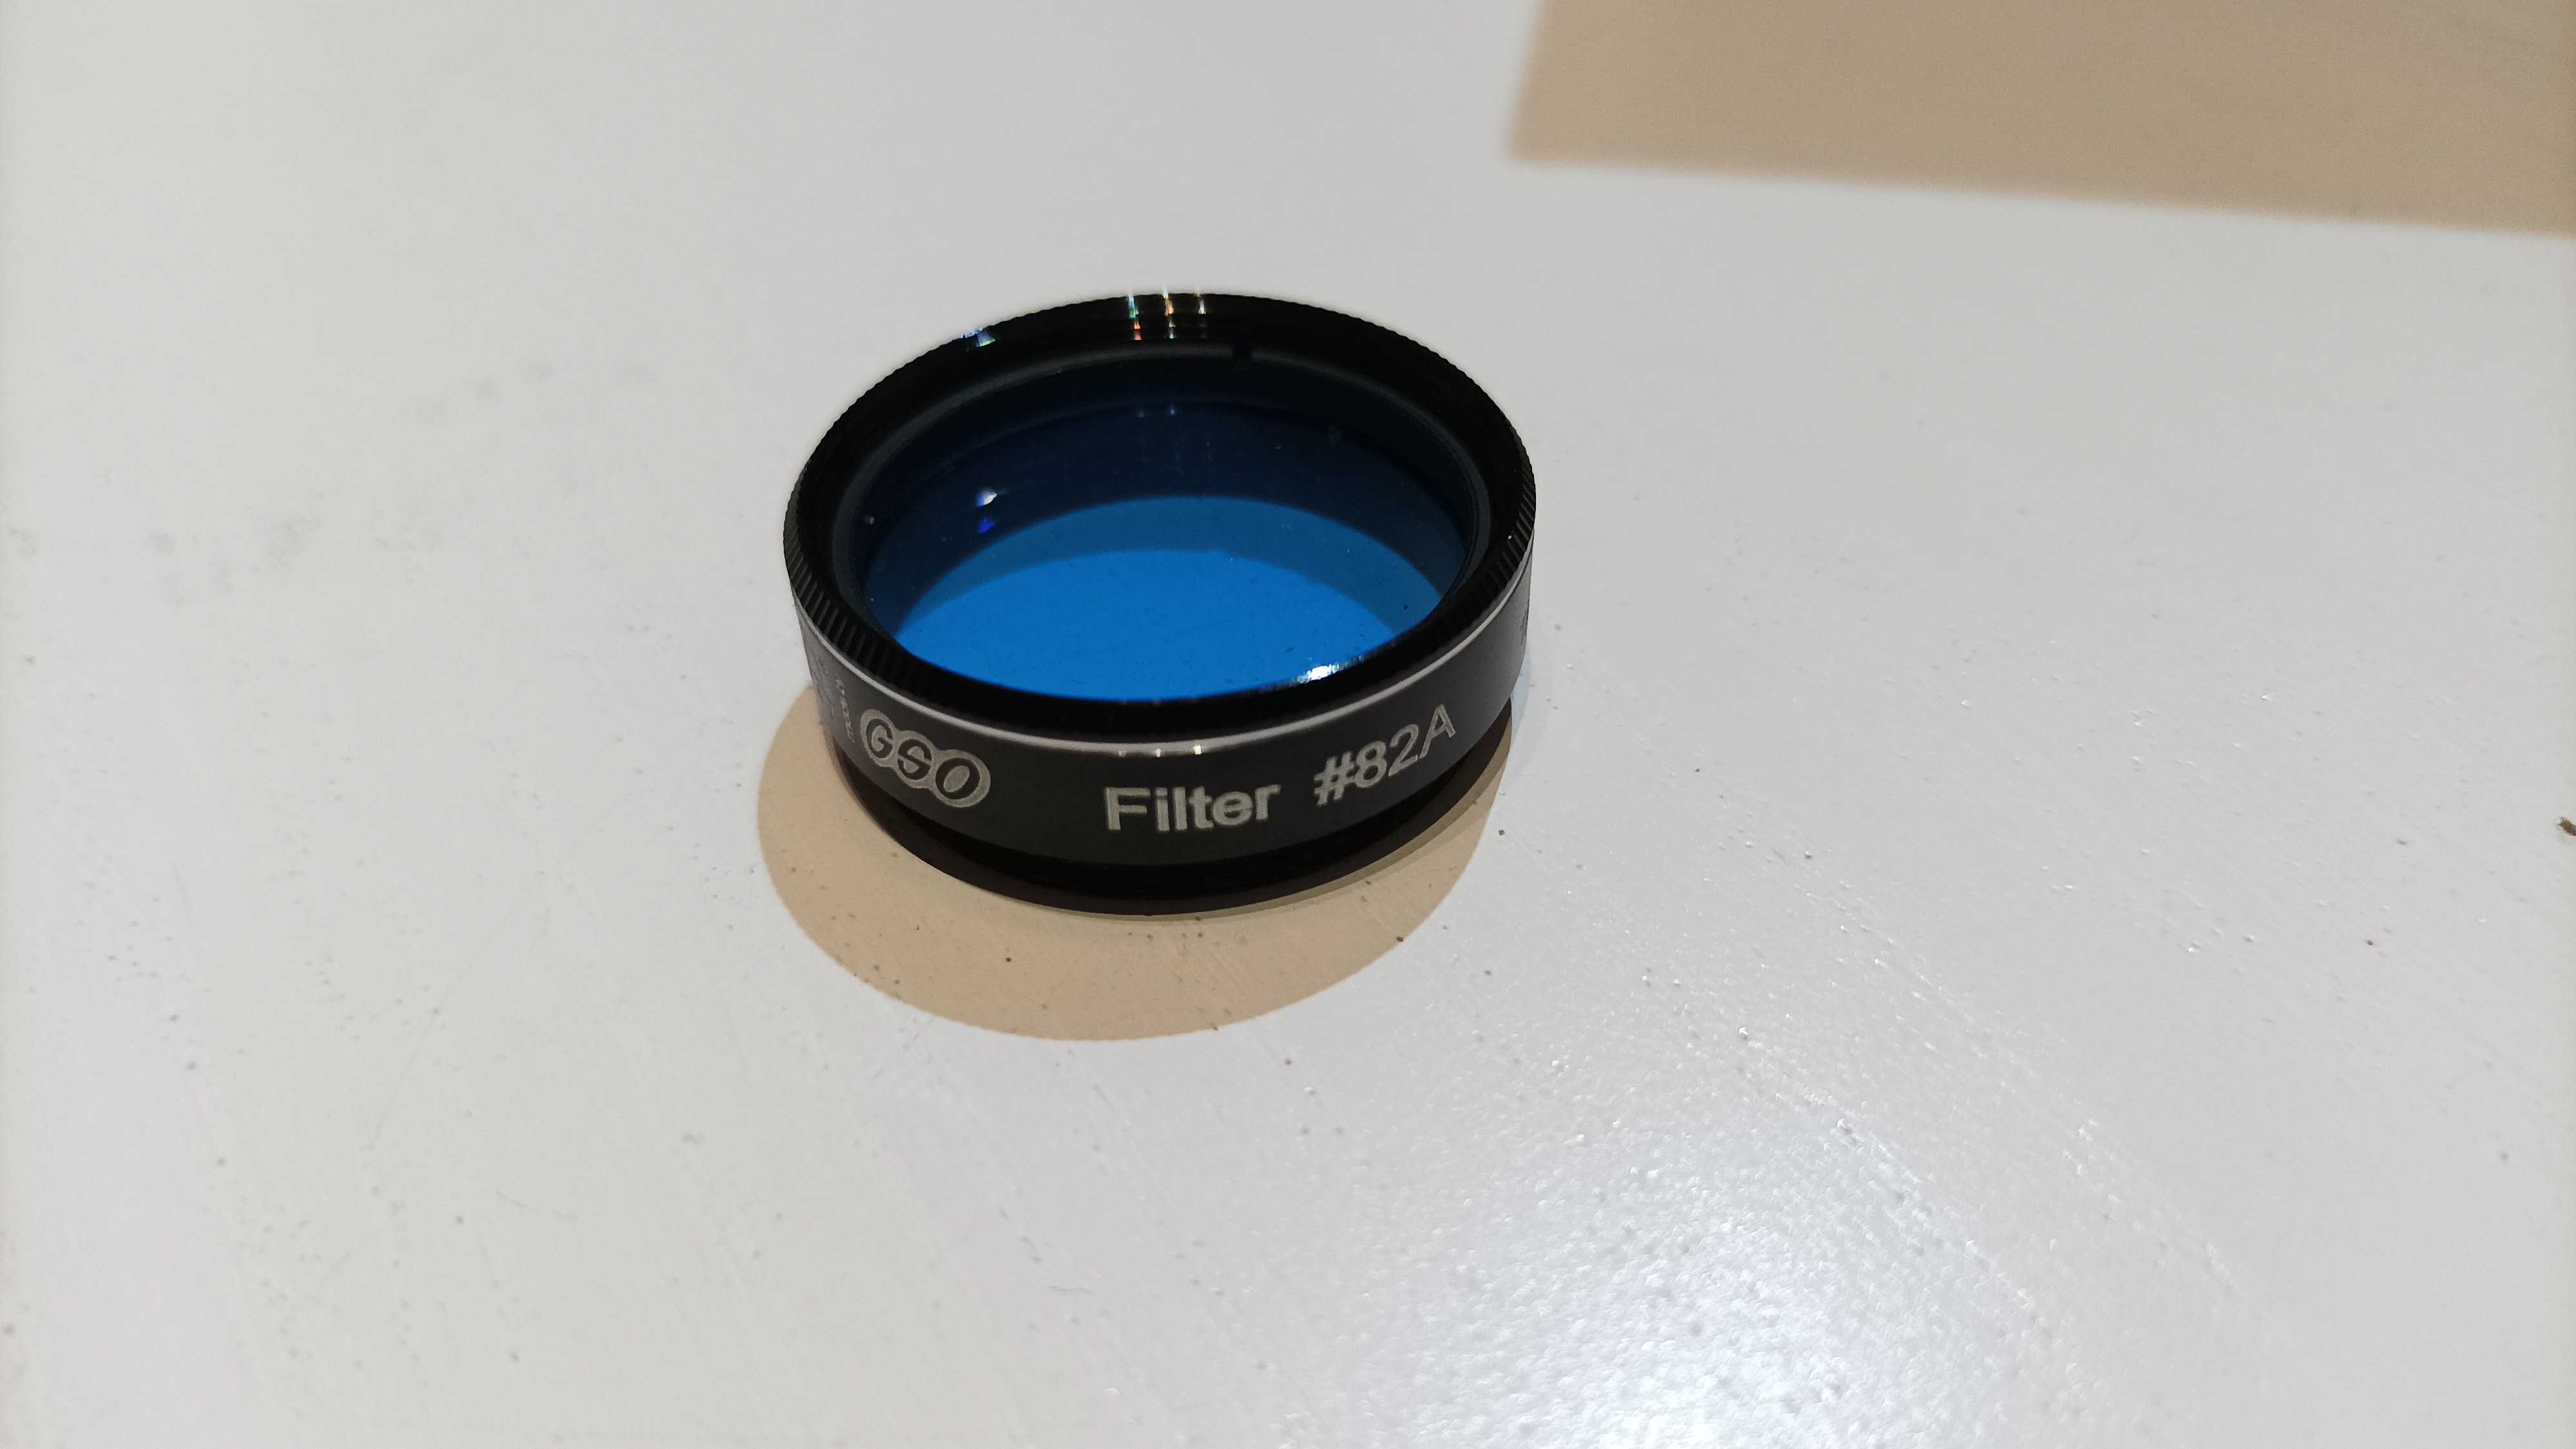 Filtr kolorowy GSO jasnoniebieski #82A 1,25 jak nowy